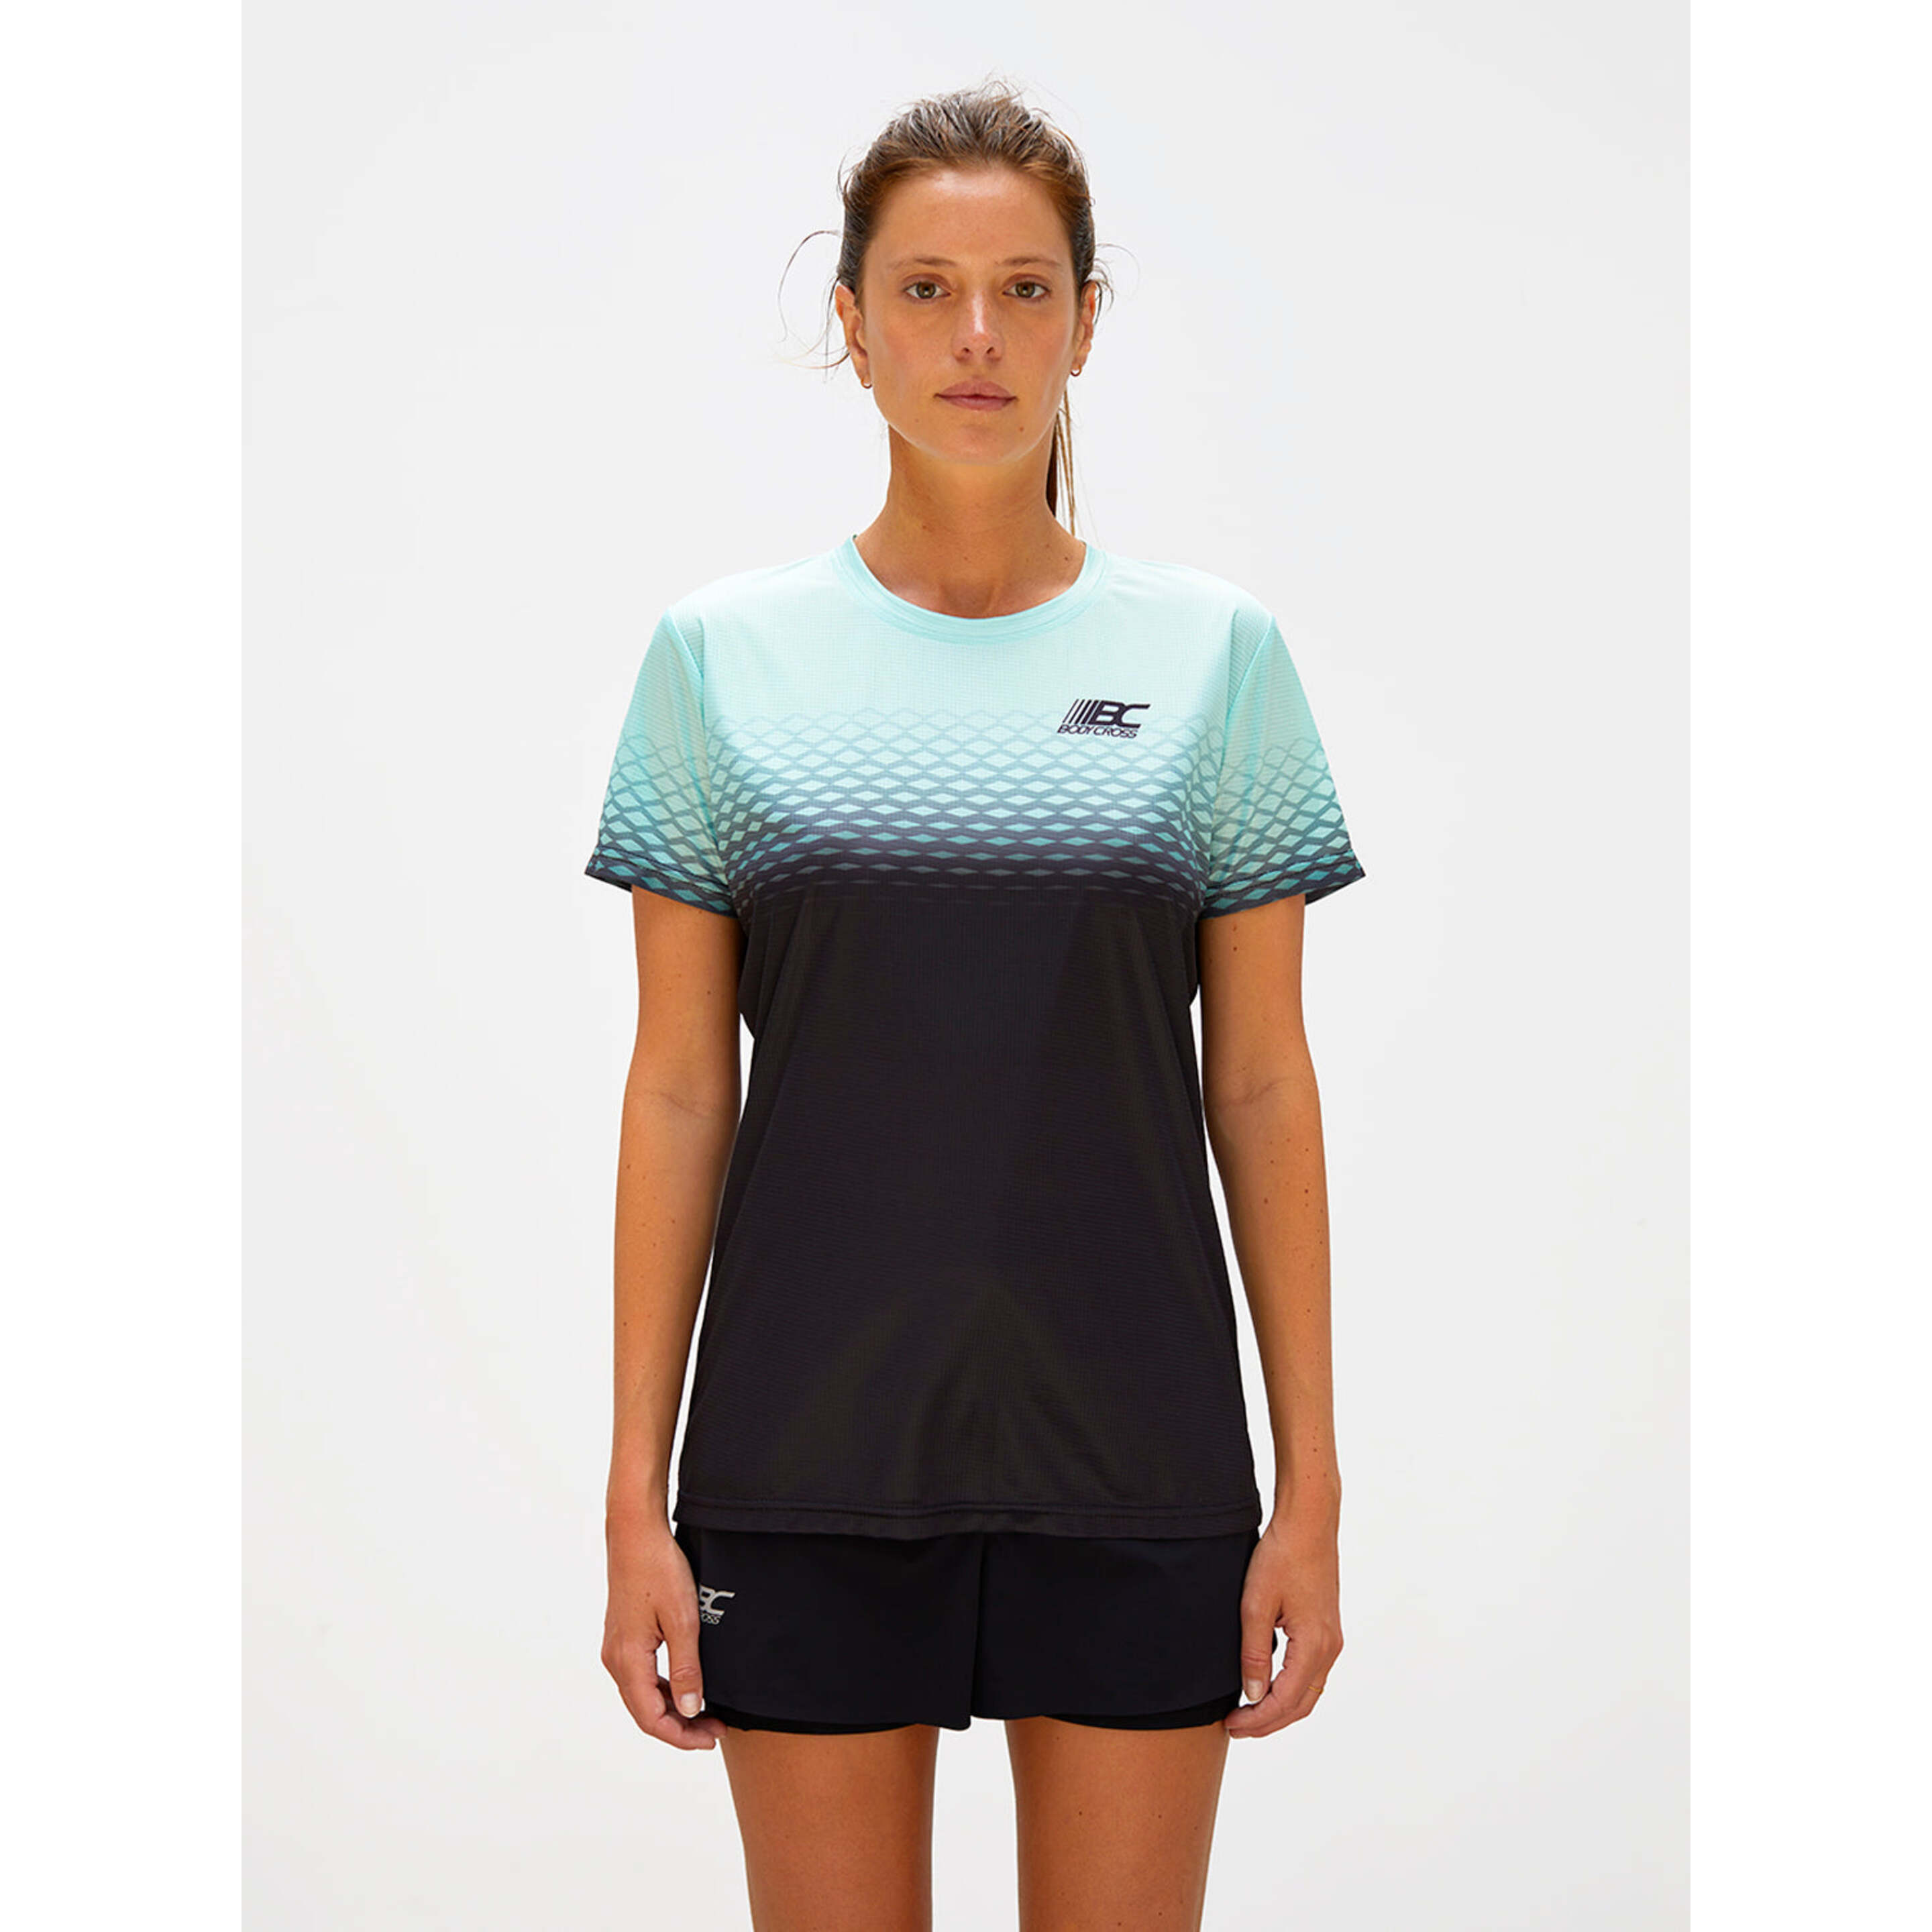 Camiseta Running Bodycross Clem - Verde - Clem-blue/black-s  MKP